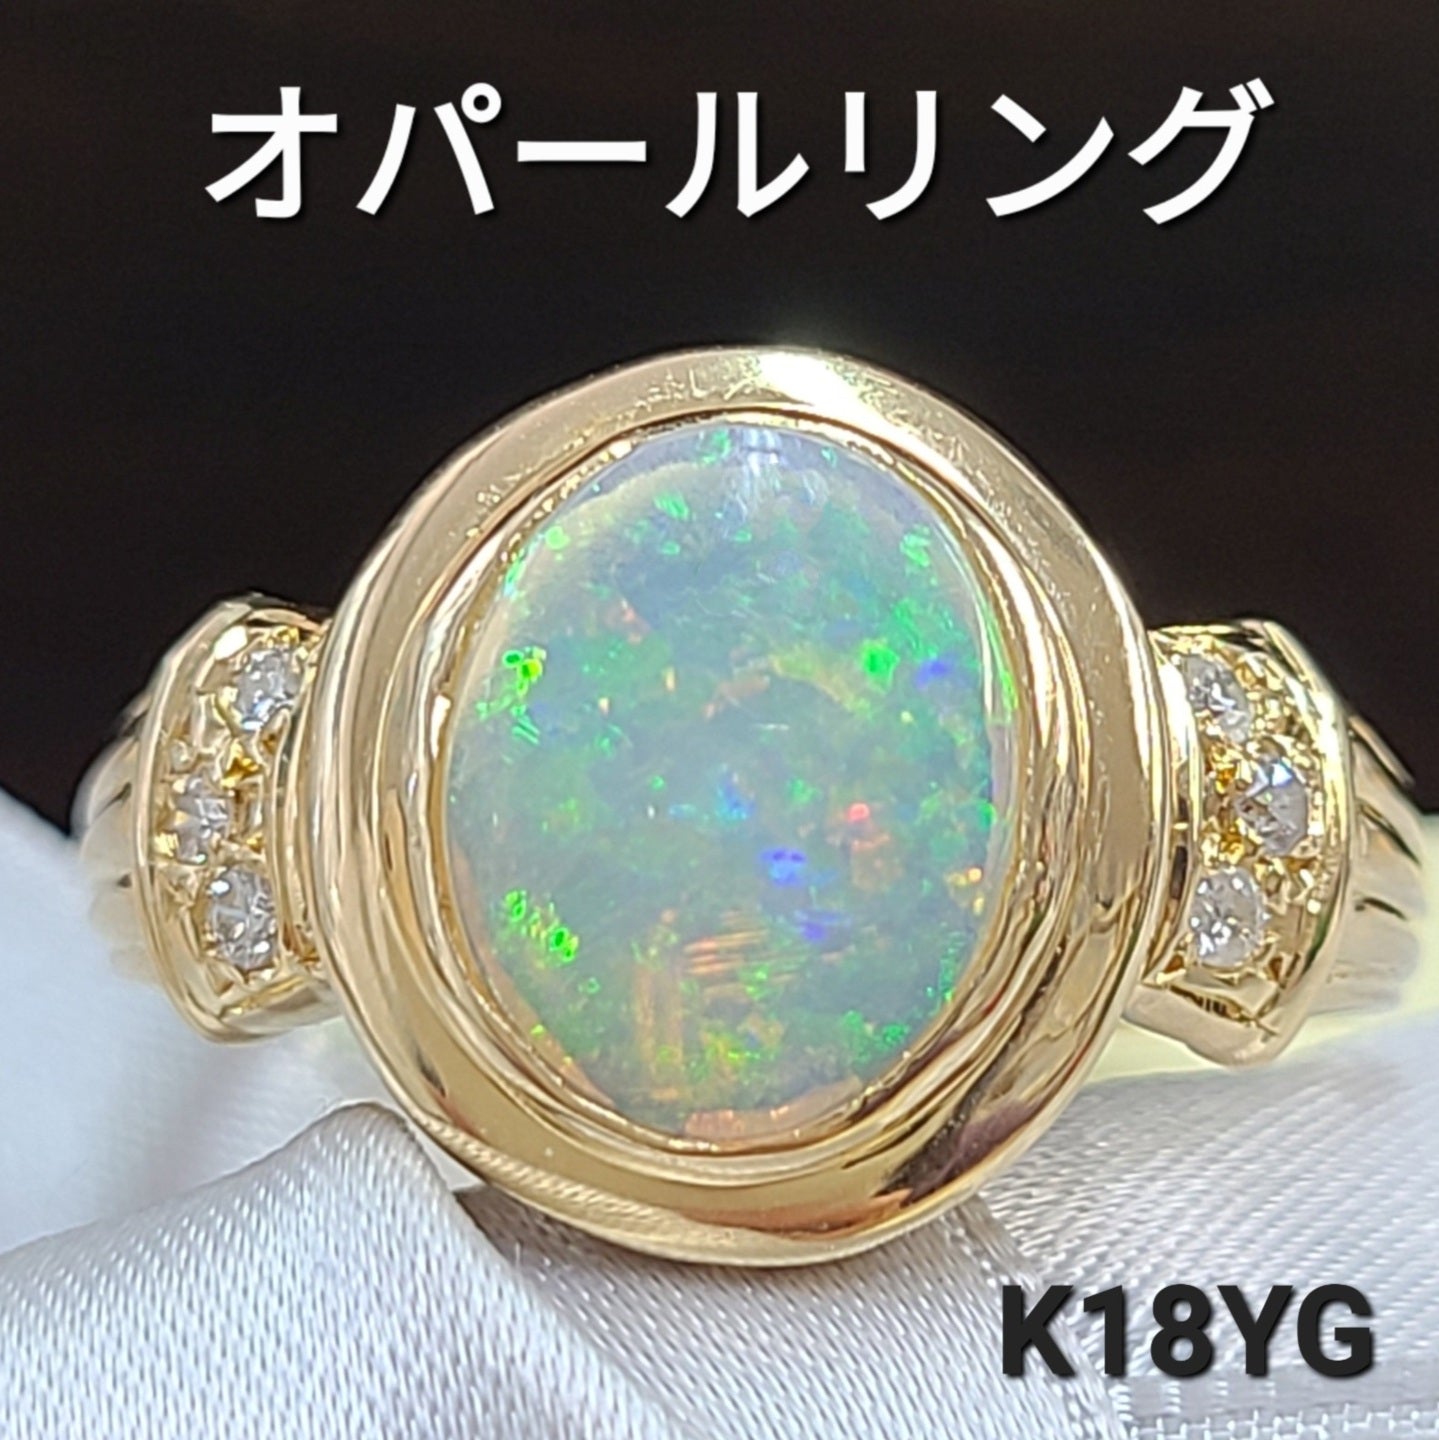 虹色の輝き レインボーオパール ダイヤモンド K18 YG イエローゴールド 